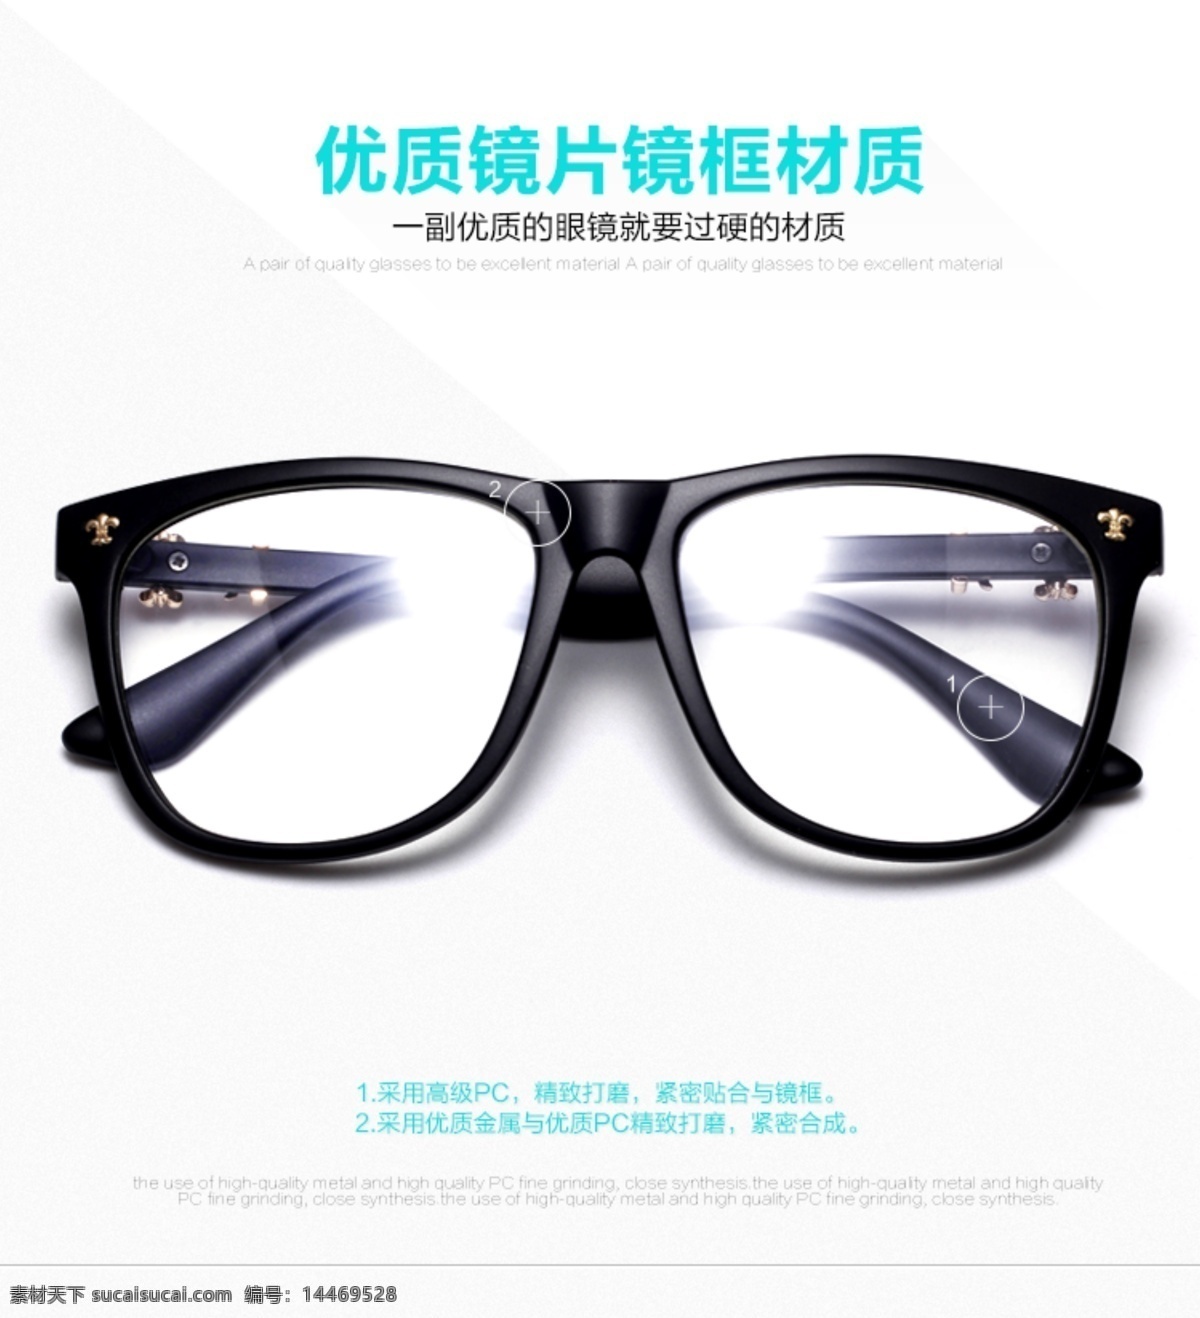 淘宝 天猫 眼镜 墨镜 太阳镜 详情 海报 淘宝素材 淘宝设计 淘宝模板下载 白色